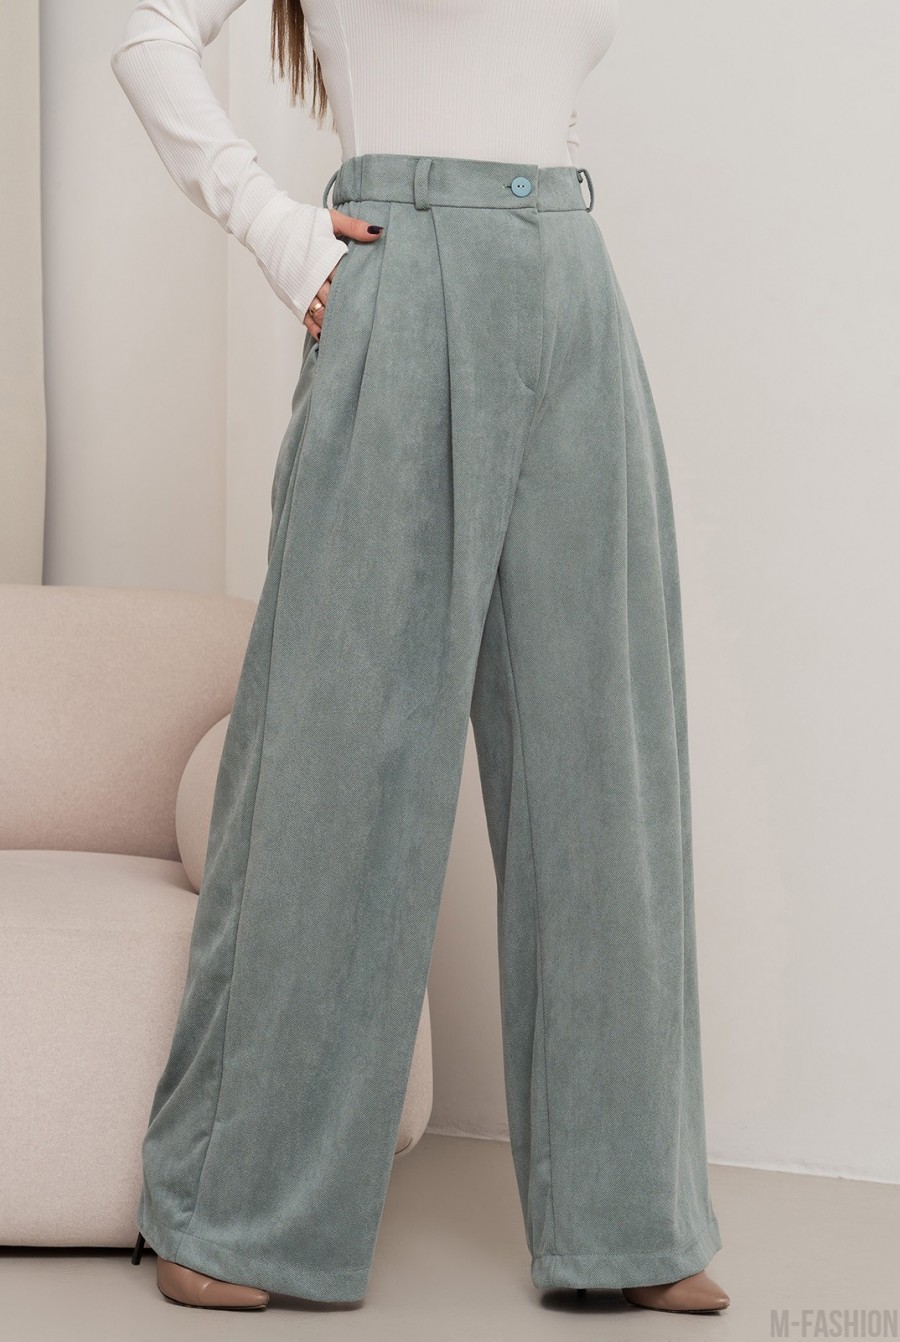 Оливковые свободные брюки палаццо из эко-замши - Фото 2